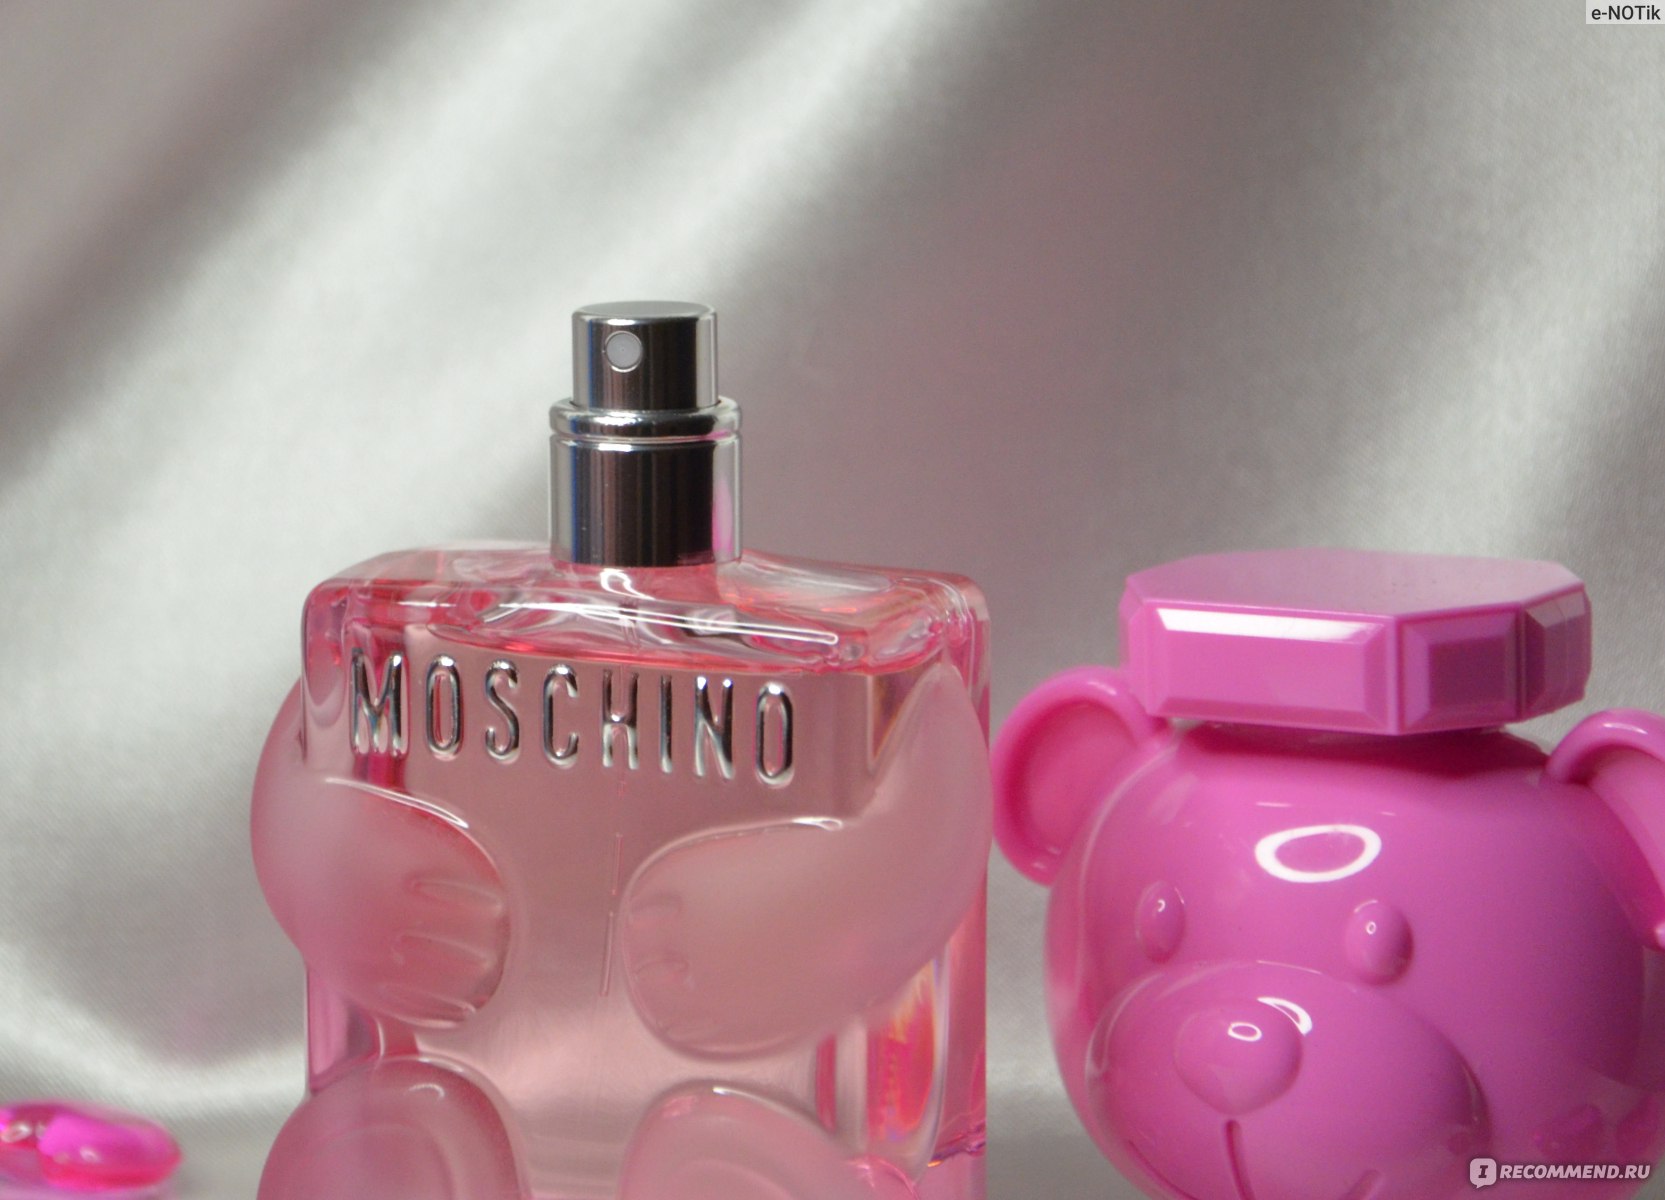 Москино мишка оригинал. Духи Москино бабл гам. Духи Москино мишка розовый. Духи Москино той 2 бабл гам. Мосхино розовый медведь.